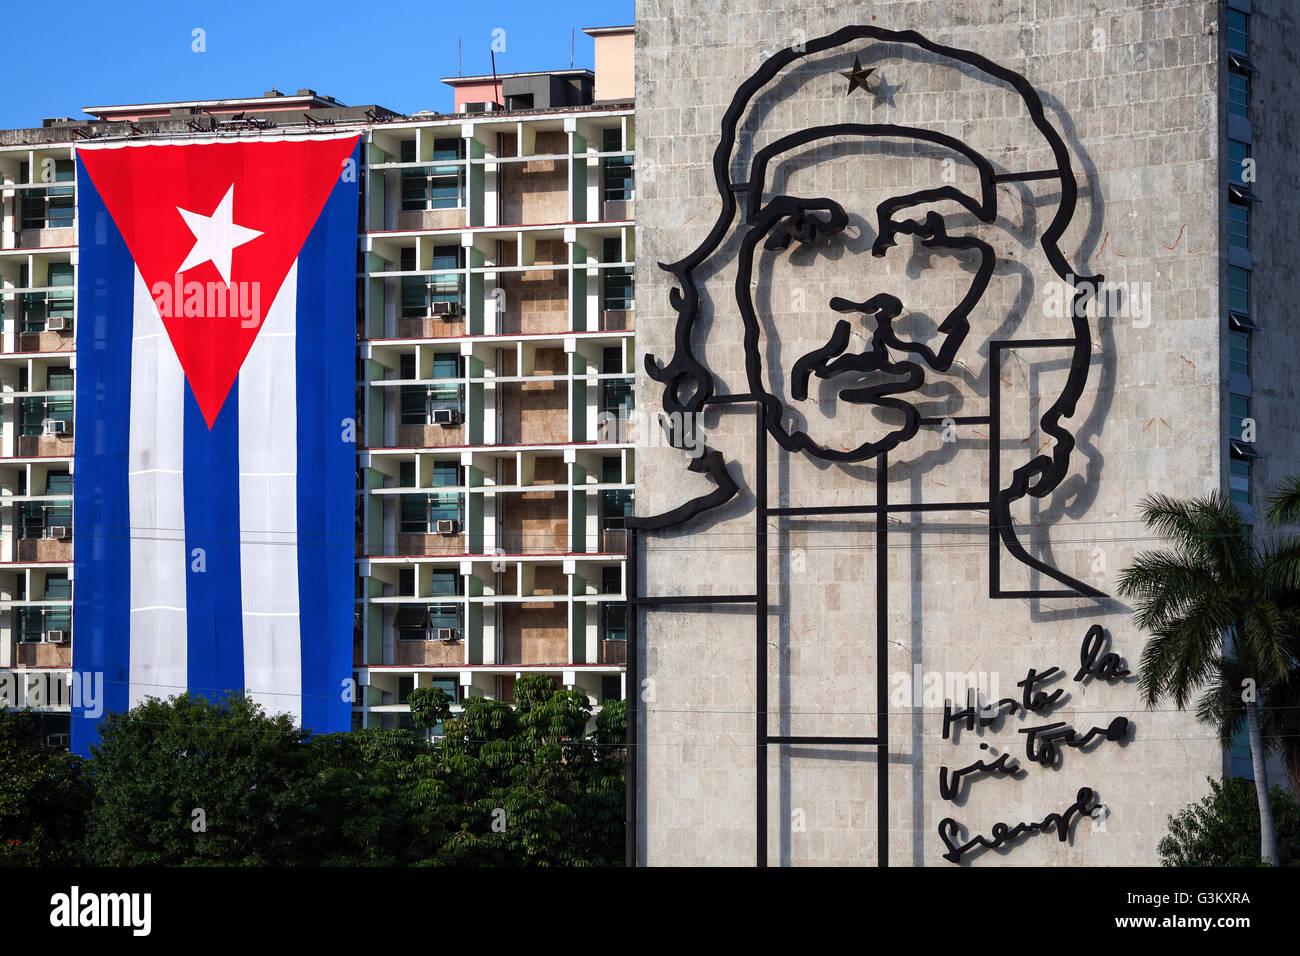 Bandiera di Cuba e il ritratto di Che Guevara sulla facciata della casa, Plaza de la Revolución, Havana, Cuba Foto Stock